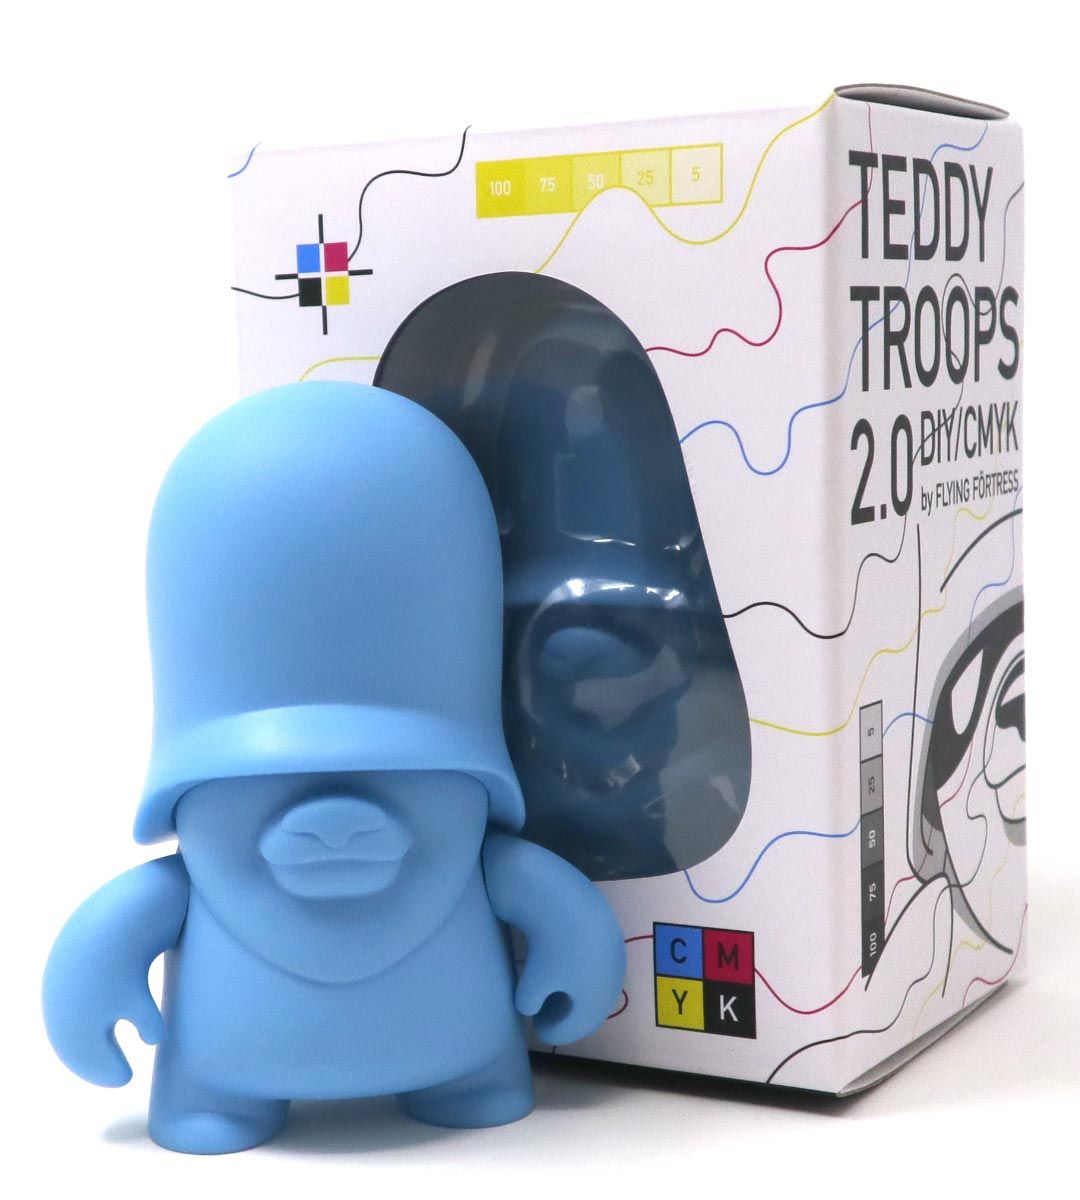 4" Teddy Troops 2.0 DIY/CMYK - Cyan